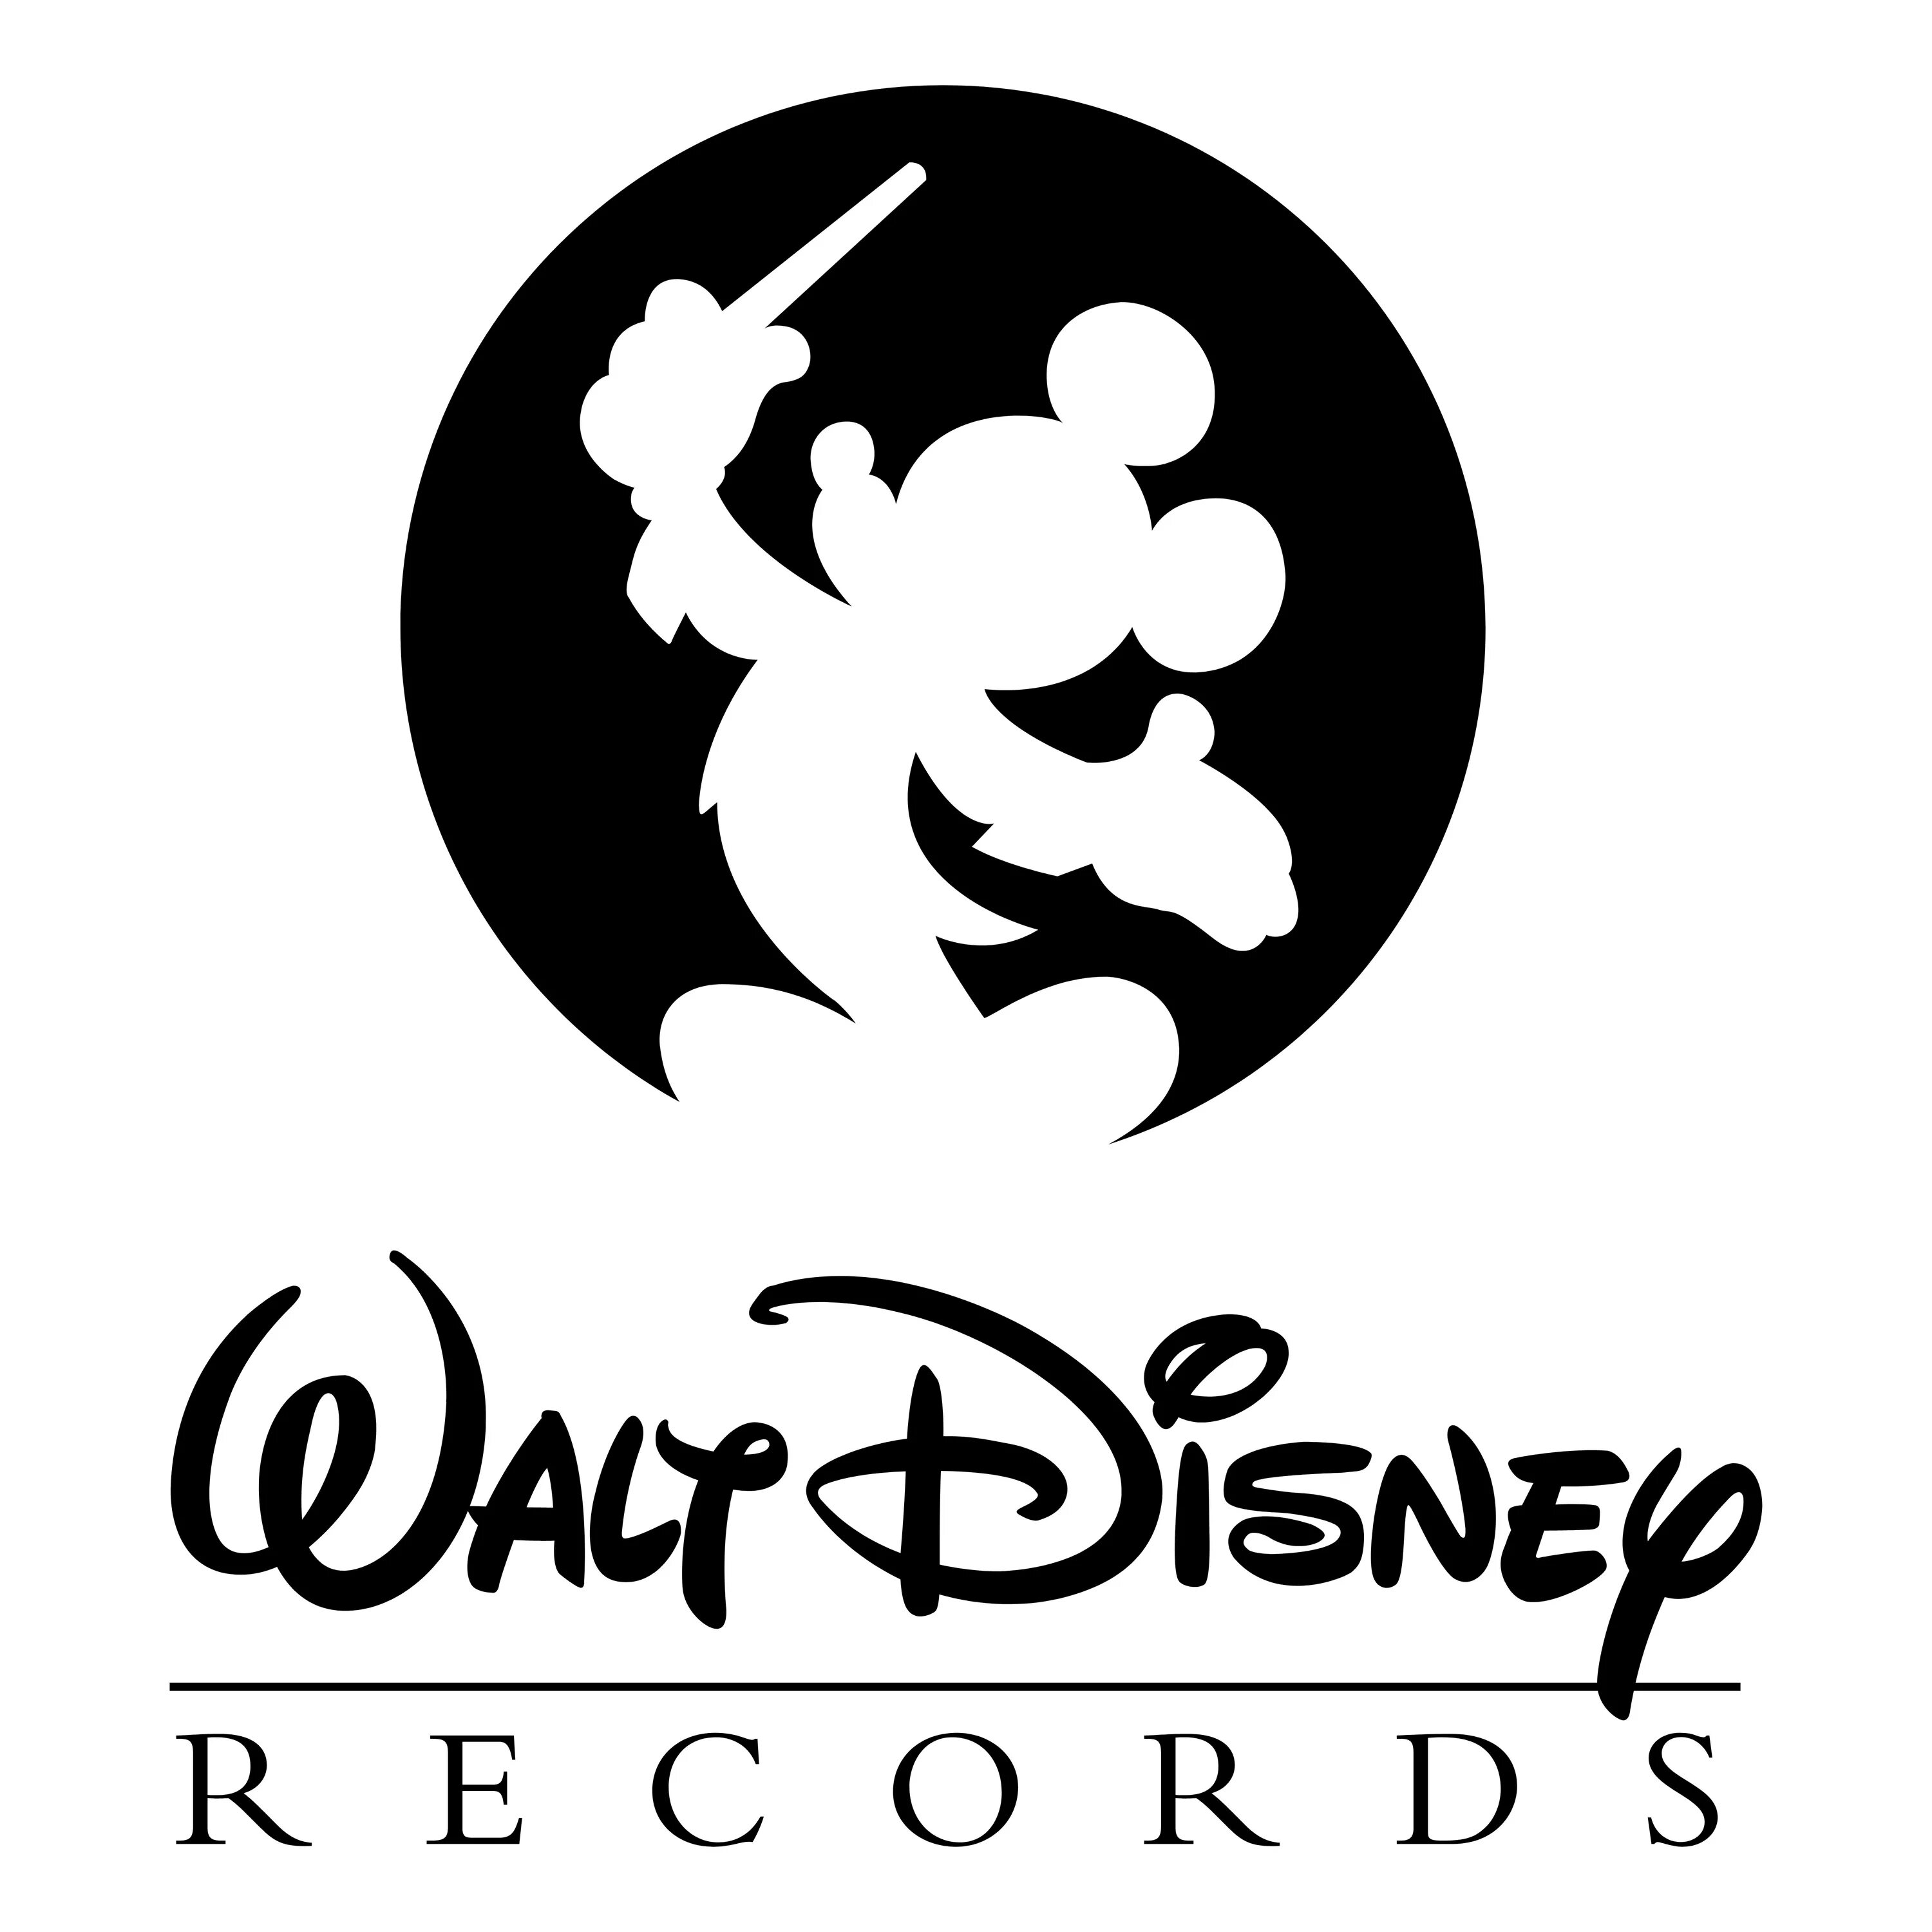 Логотип диснея. Walt Disney records логотип. The Walt Disney Company логотип. Фирменный знак Уолт Дисней. Символ Диснея.